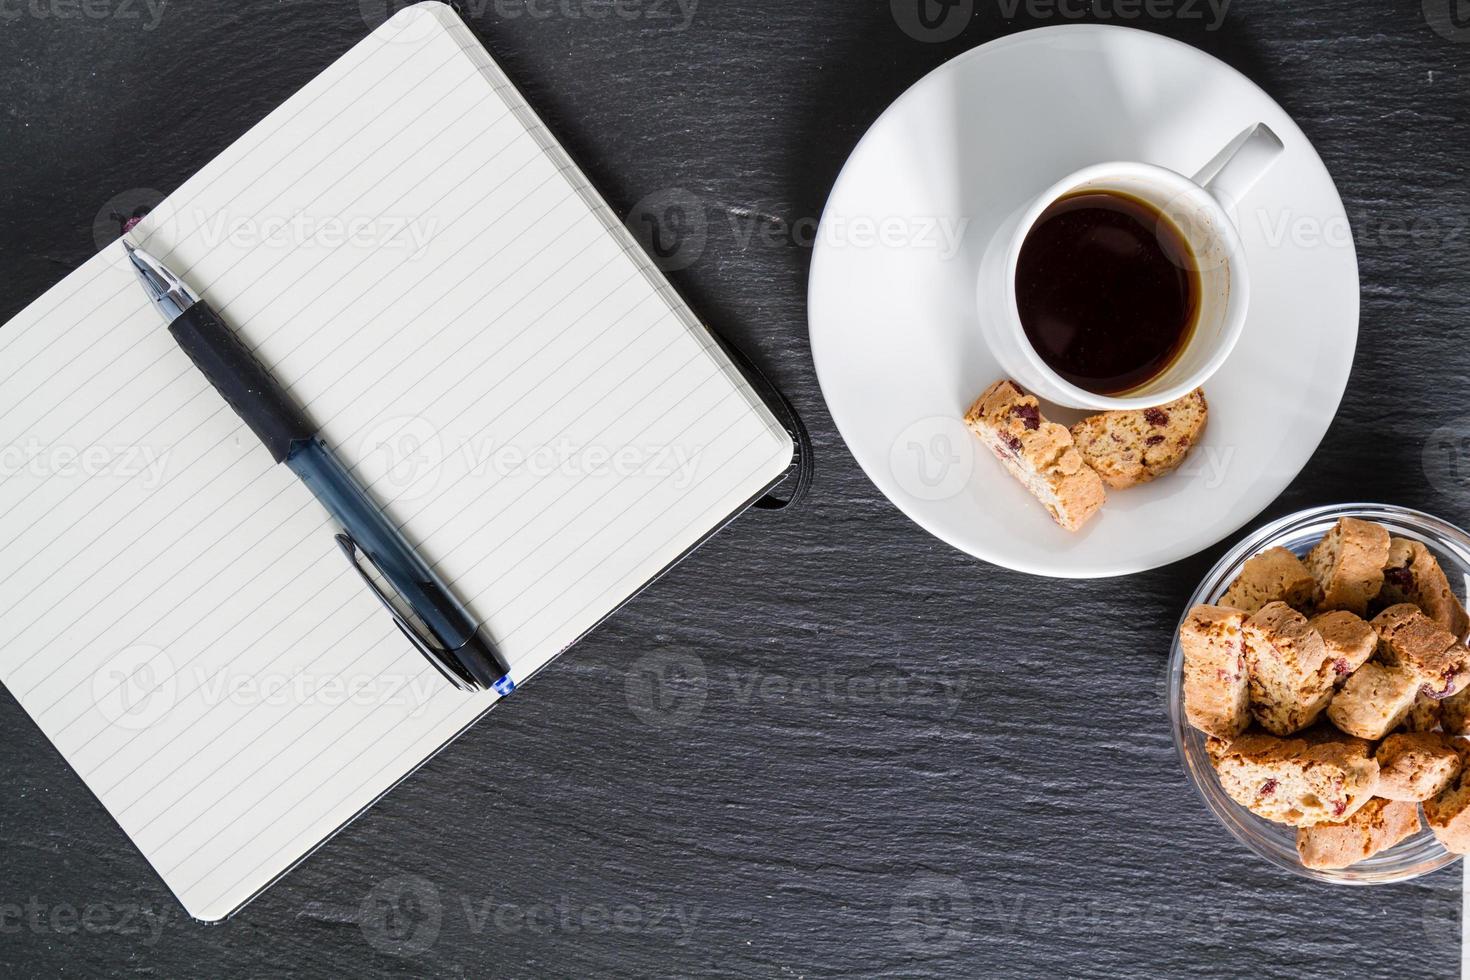 affärsmöte - kaffe, kakor, anteckningar, penna, foto